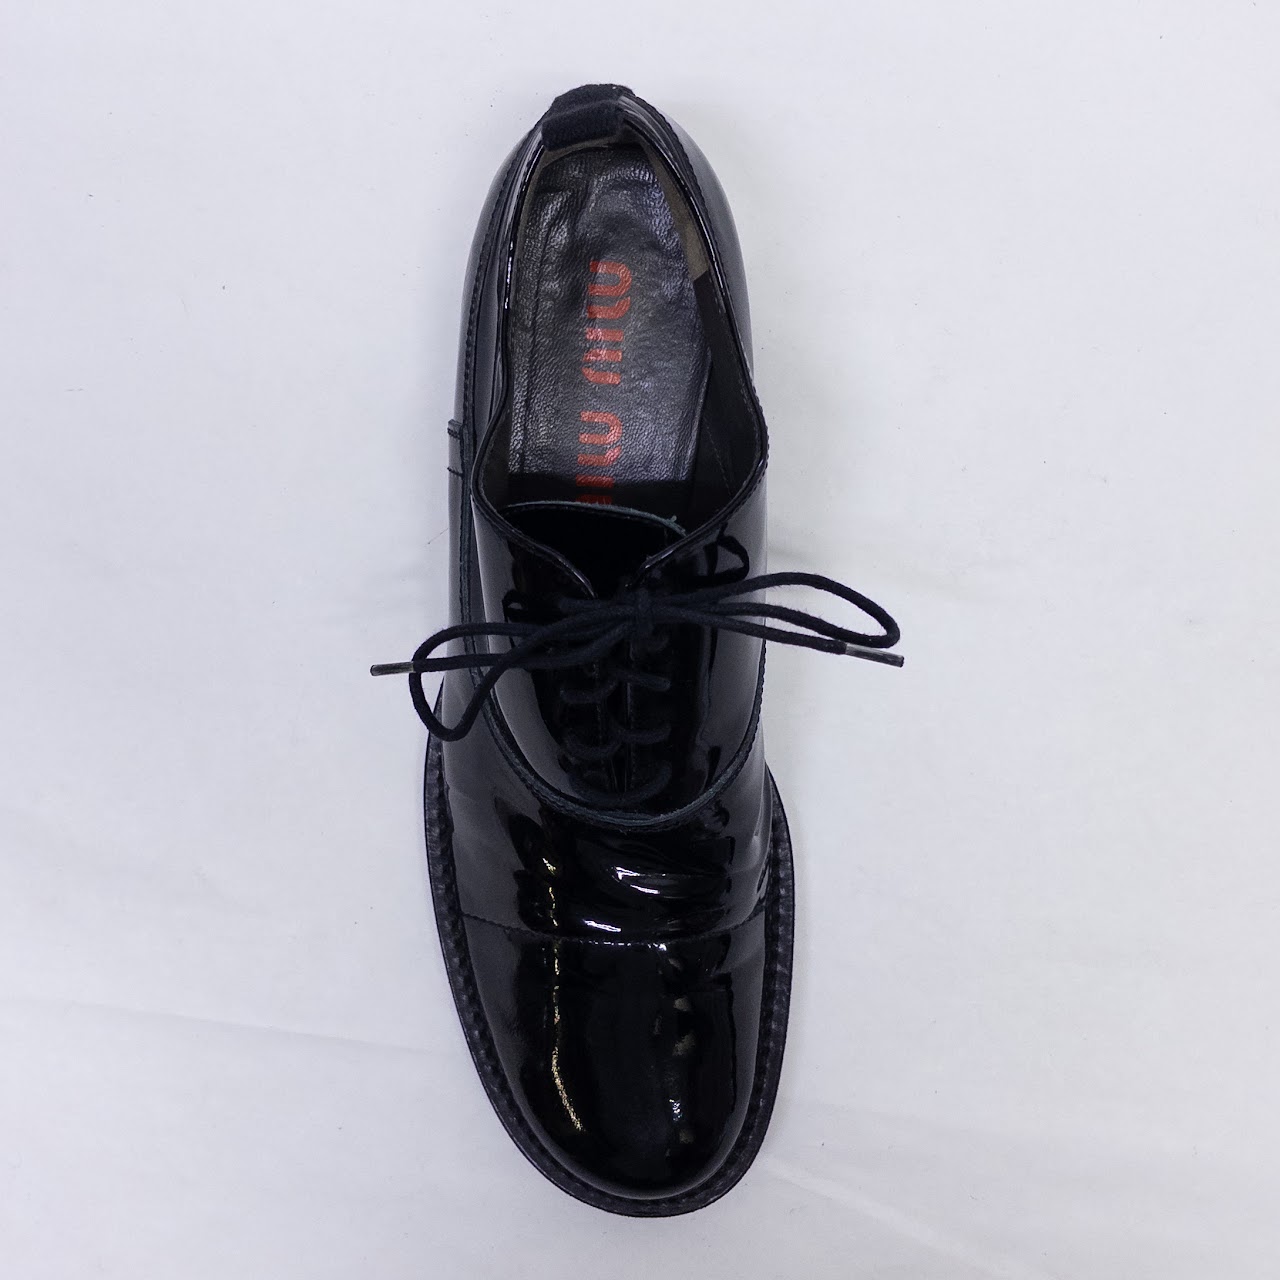 Miu Miu Patent Leather Oxford Shoes